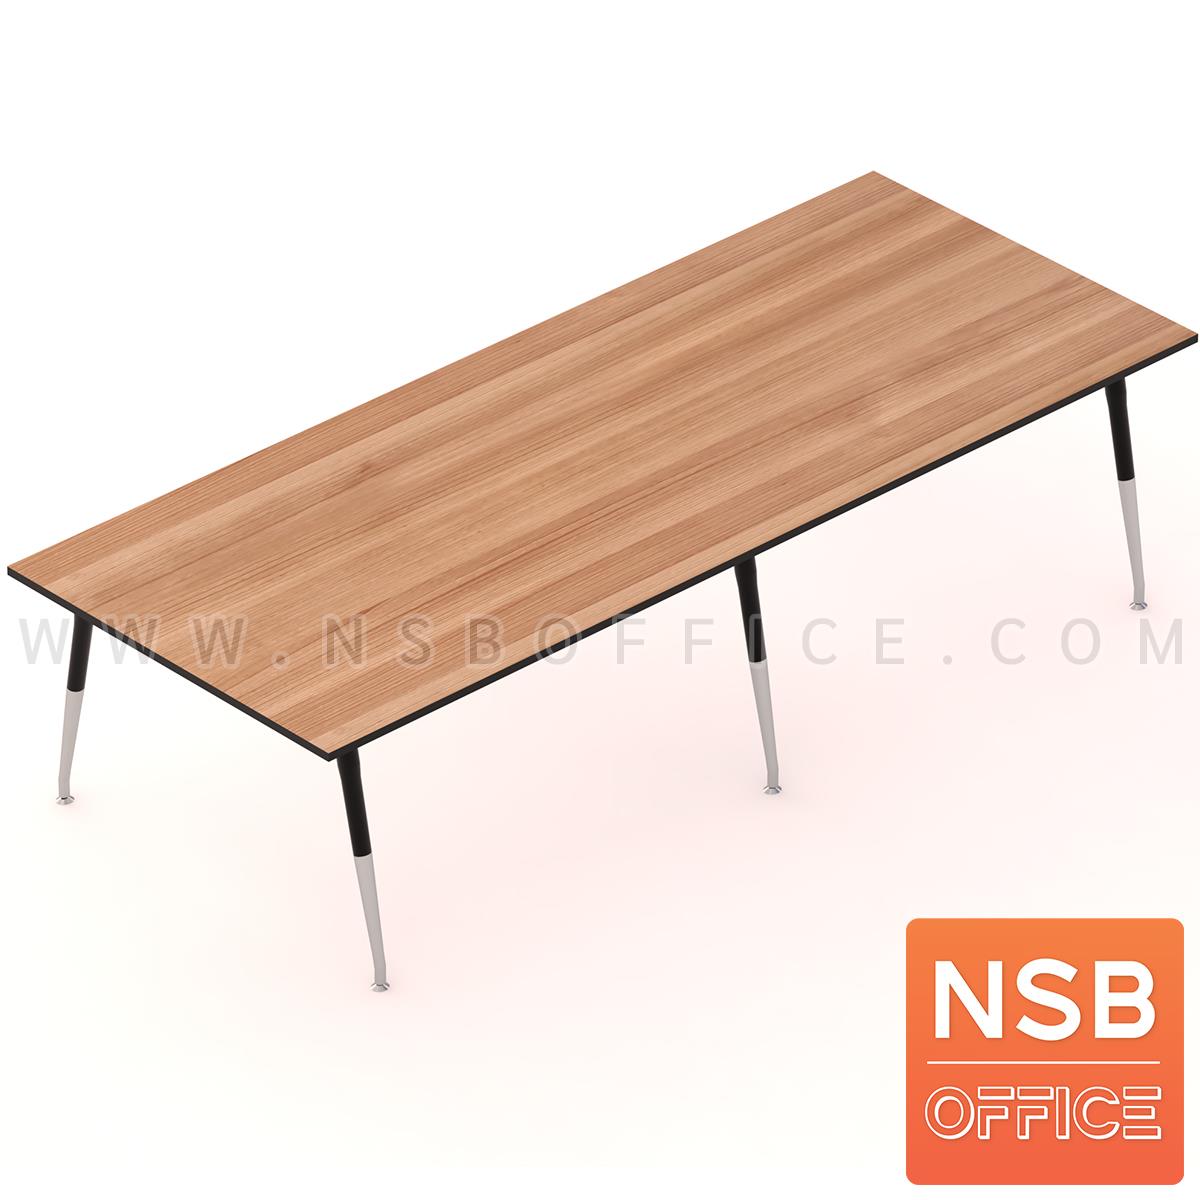 A05A089:โต๊ะประชุมทรงสี่เหลี่ยมยาว  300W-460W (120D) cm.  ขาเหล็กปลายเรียว